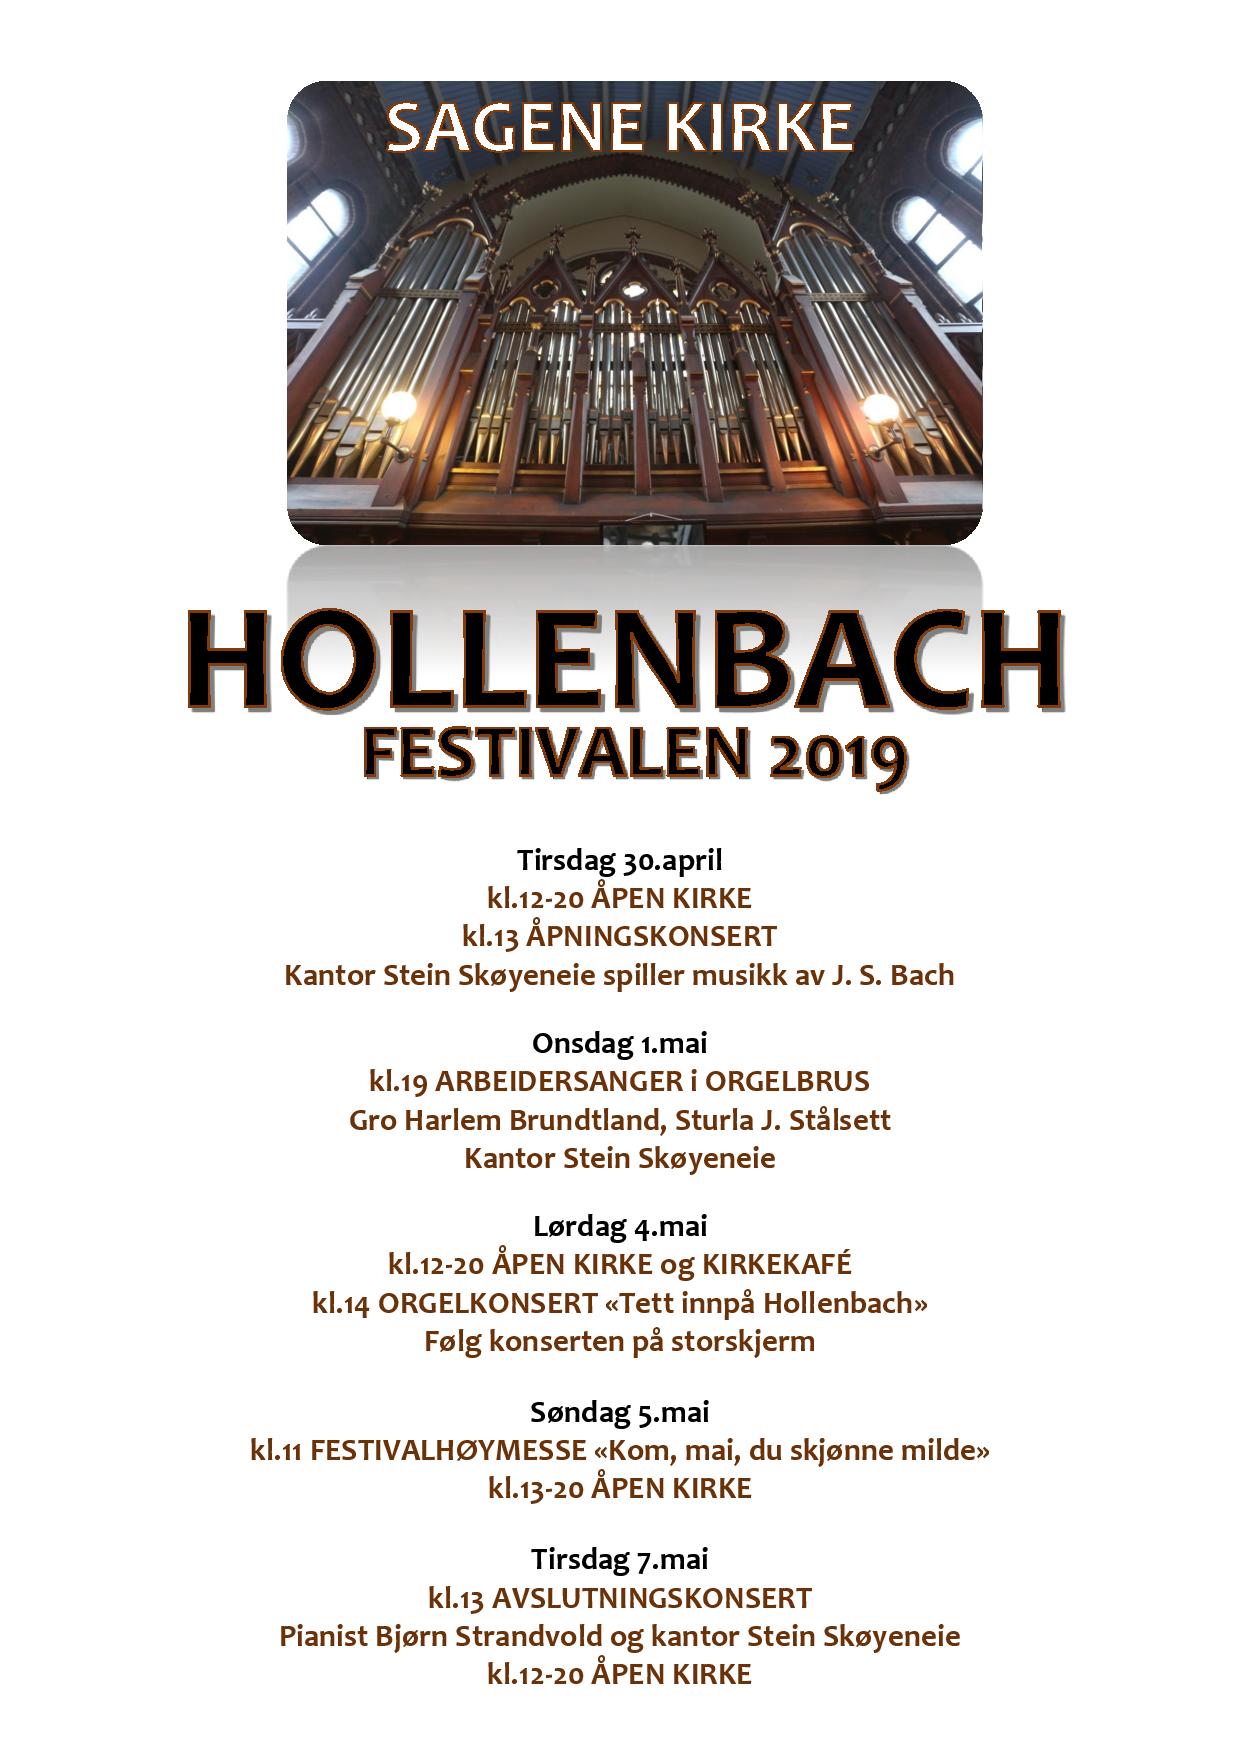 Hollenbachfestivalen 2019 programhefte-page-001.jpg